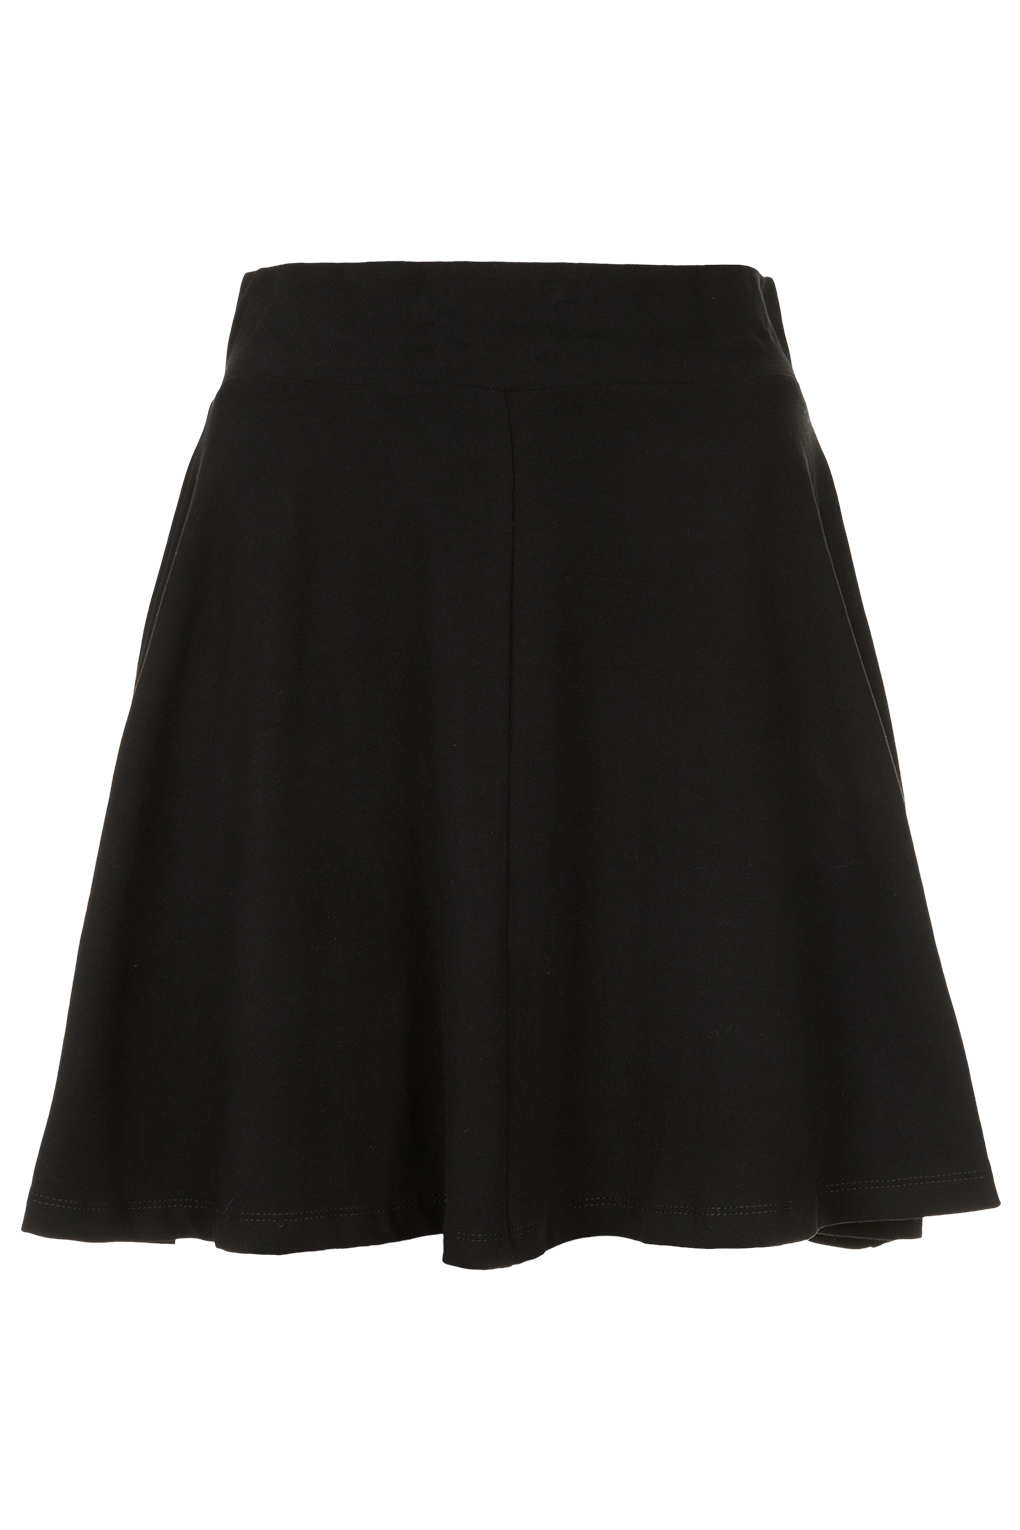 Lyst - Topshop Black High Waist Skater Skirt in Black